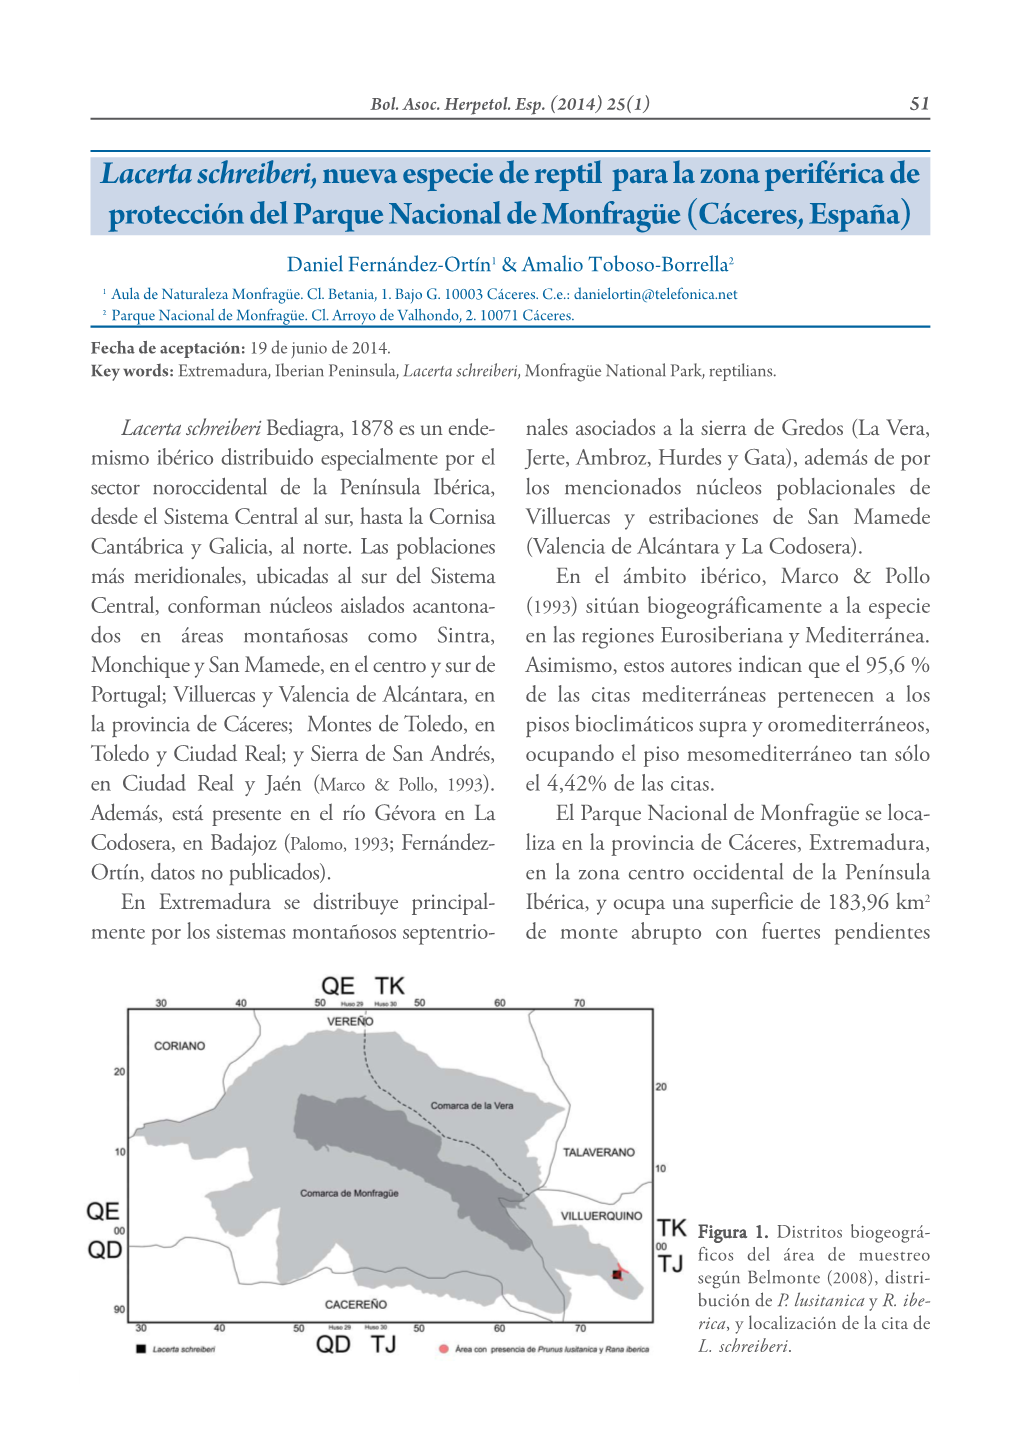 Lacerta Schreiberi, Nueva Especie De Reptil Para La Zona Periférica De Protección Del Parque Nacional De Monfragüe (Cáceres, España)